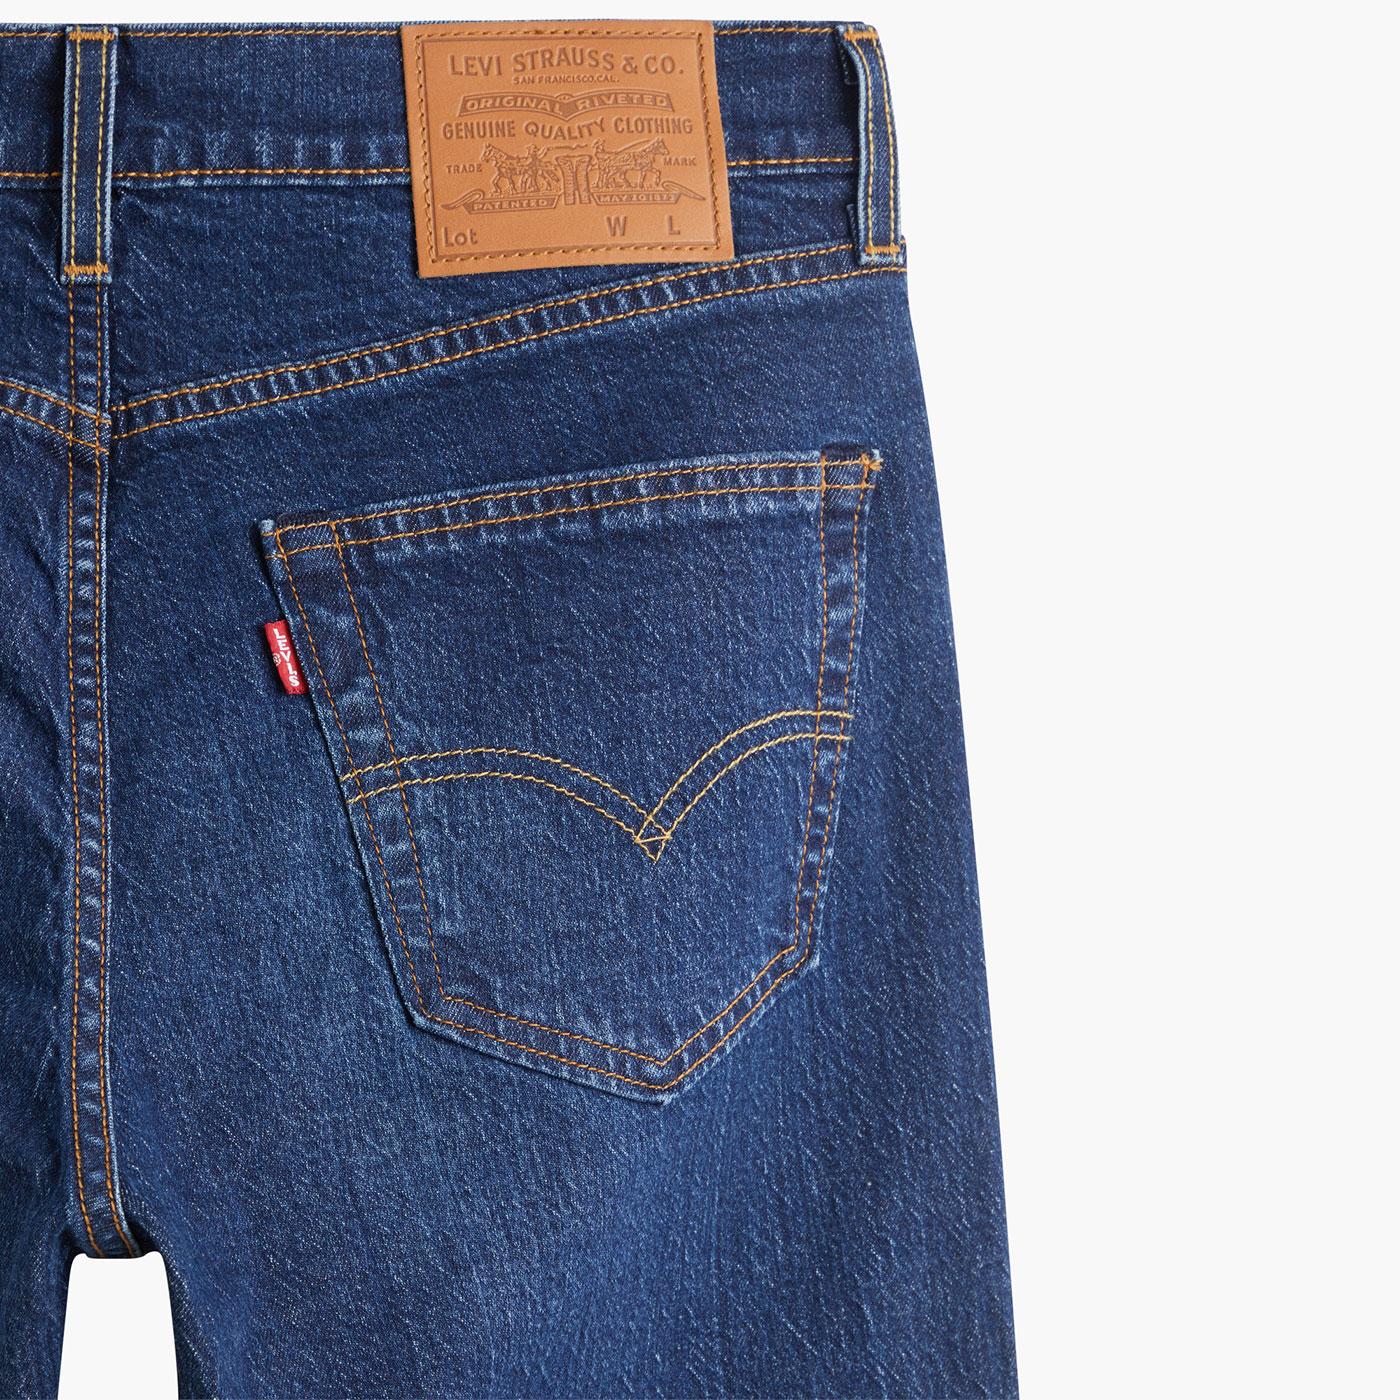 LEVI'S 511 Slim Retro Denim Jeans in Laurelhurst Just Worn